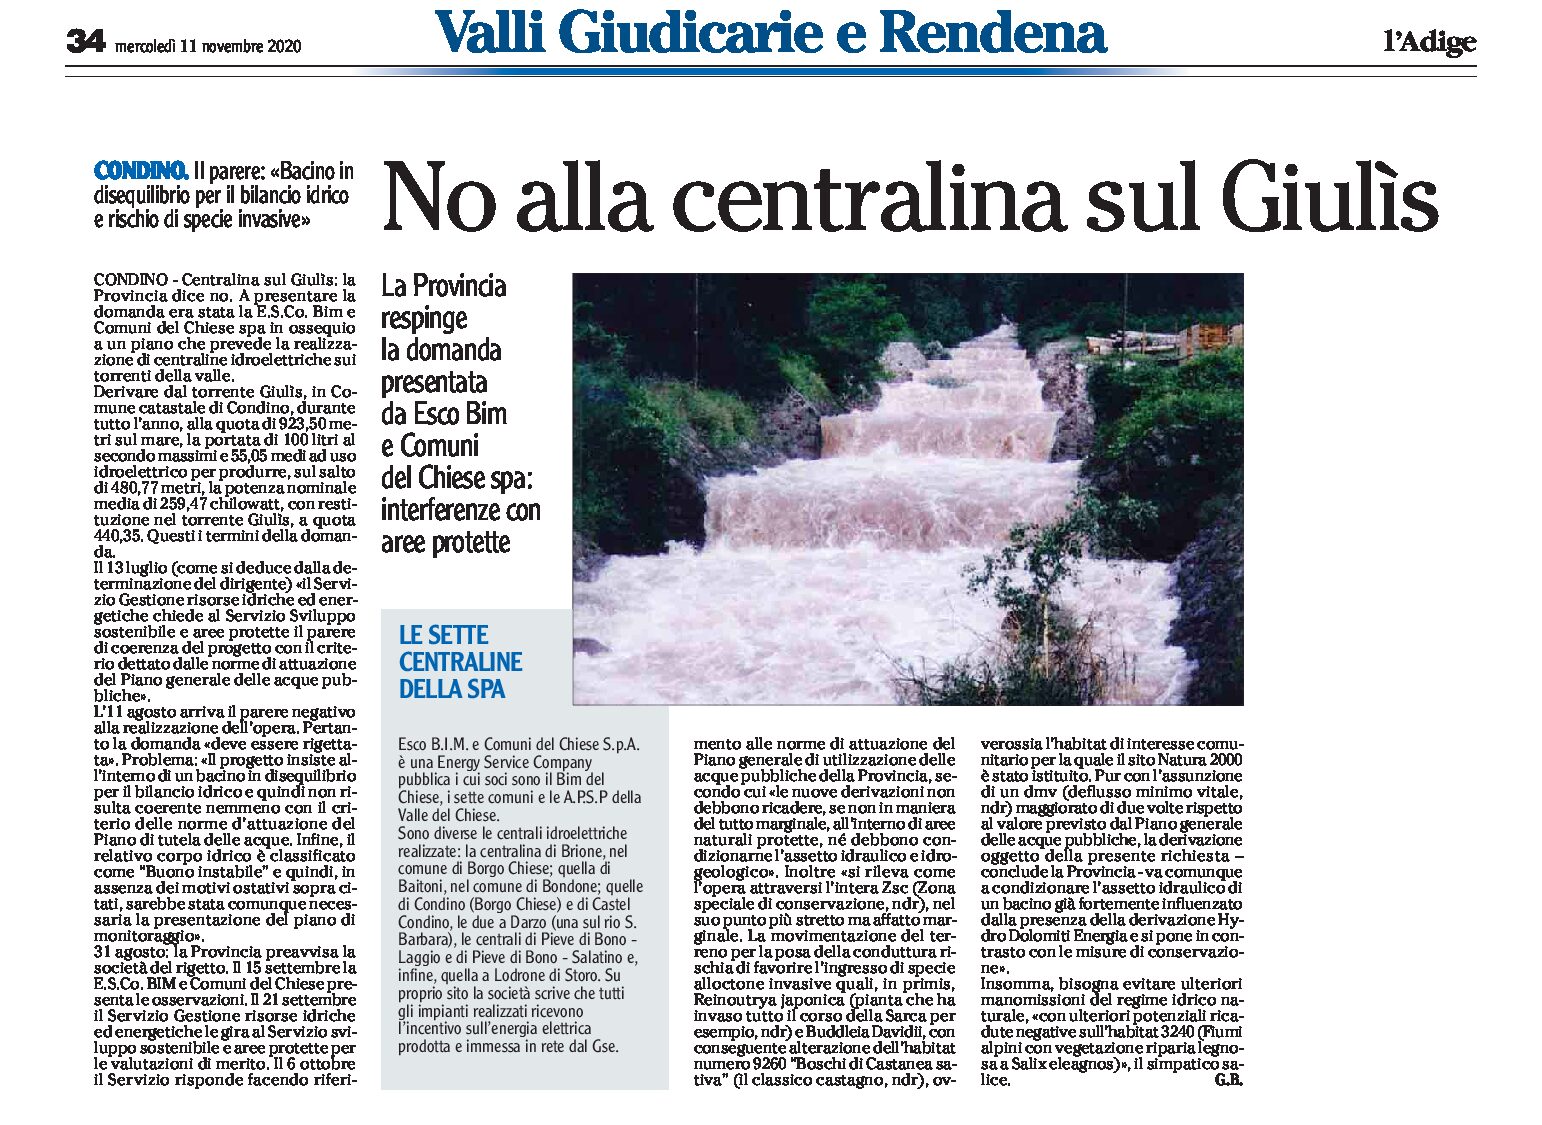 Condino: no alla centralina sul Giulìs. Provincia, interferenze con aree protette